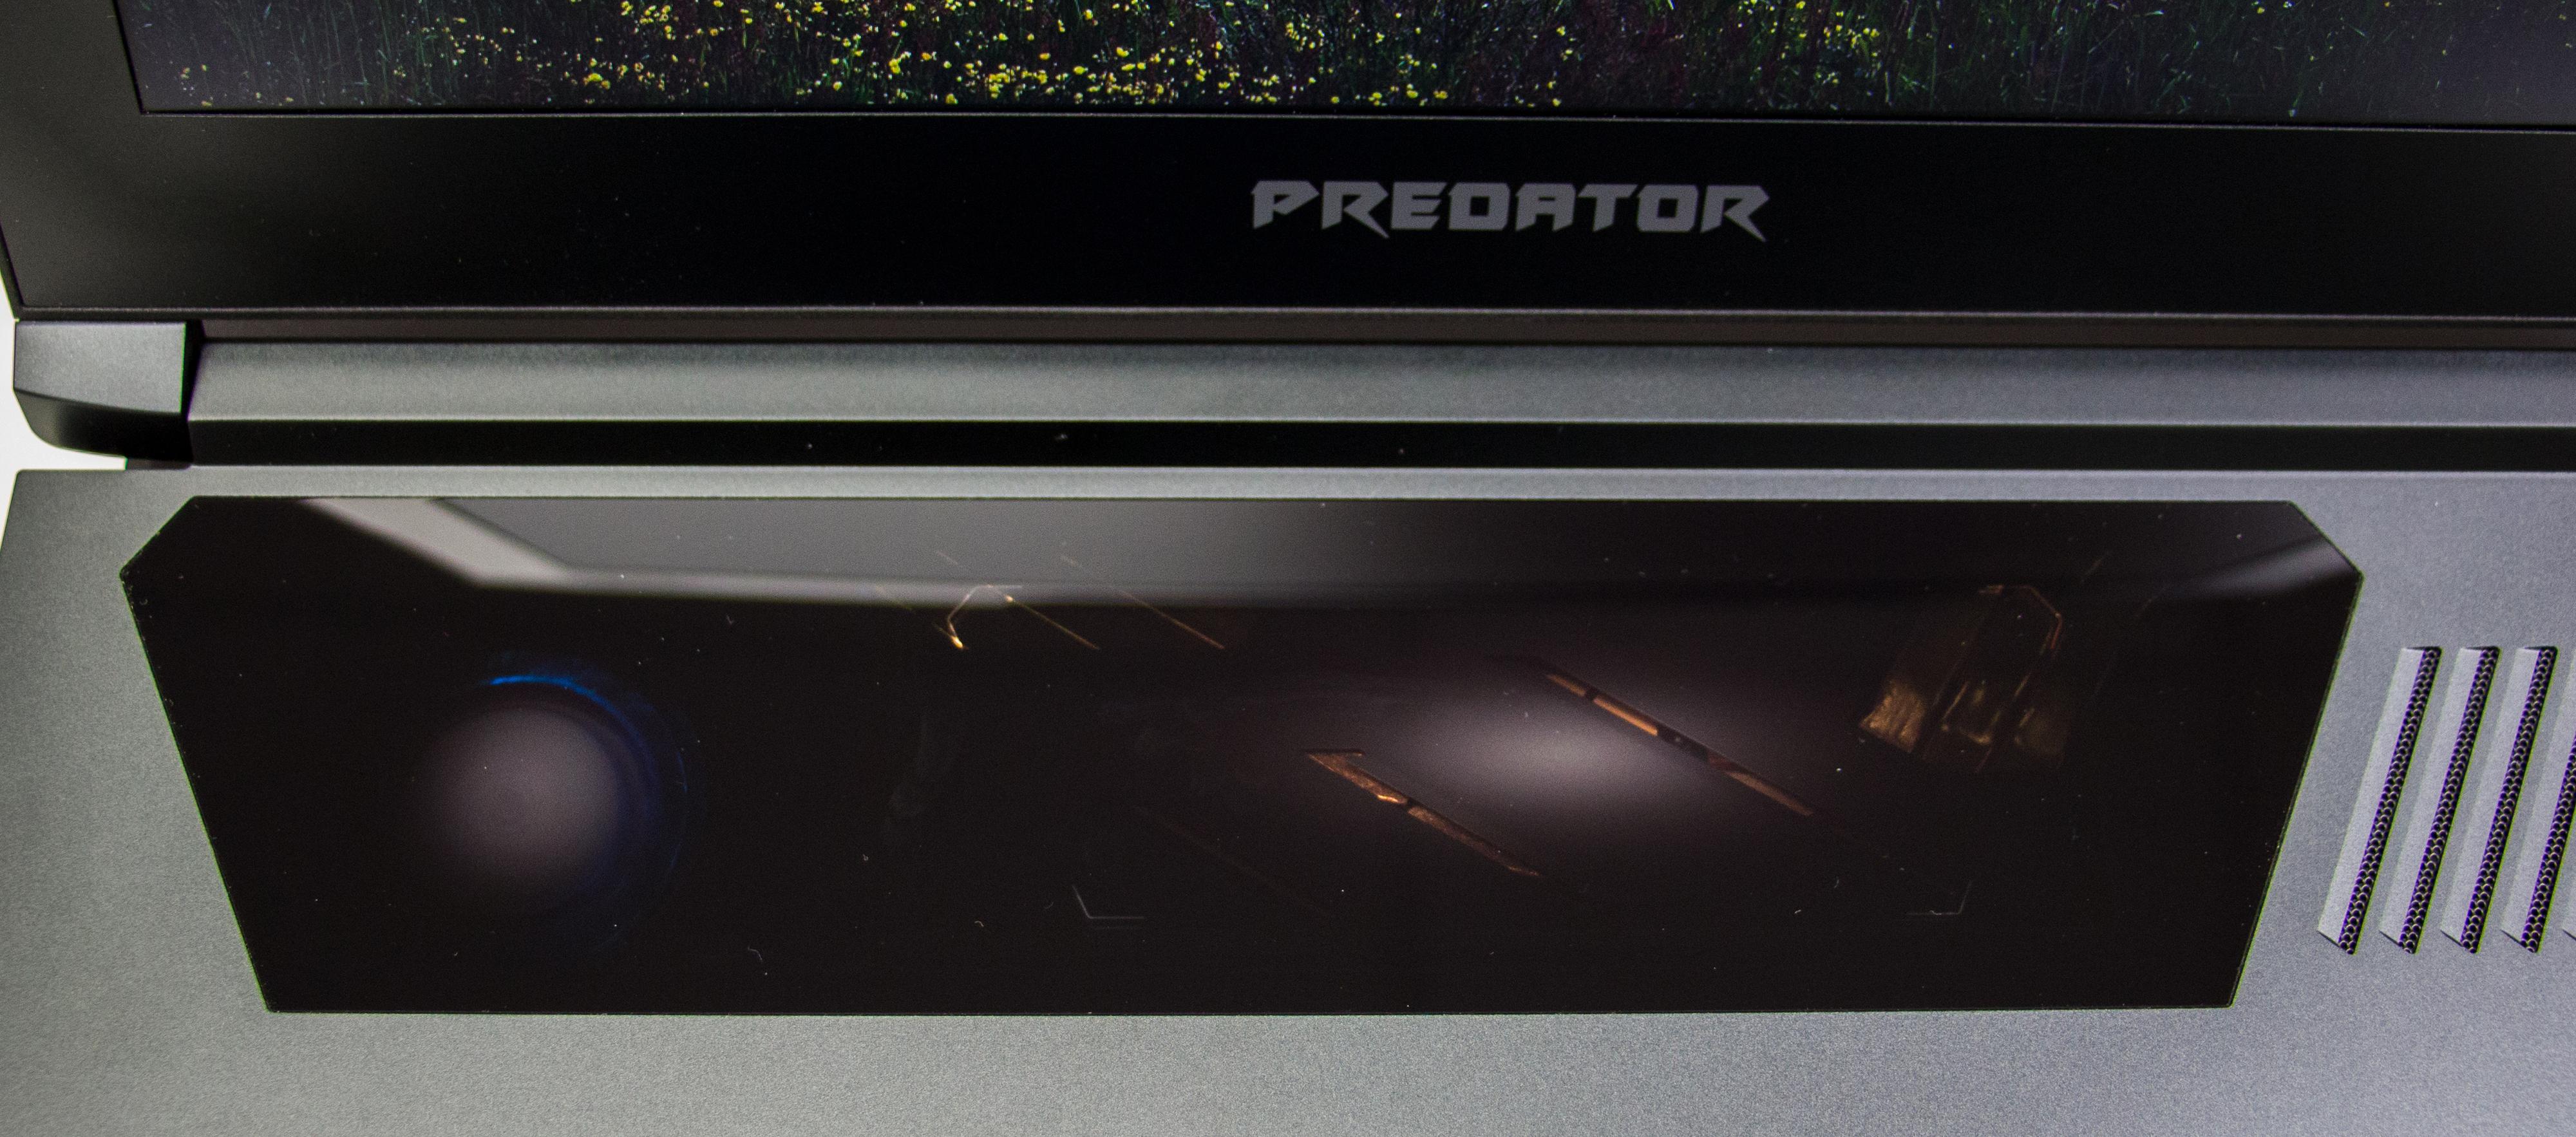 Du kan så vidt se markørene som viser hvor glassflaten registrerer fingerbevegelsene dine hos Triton 700. Legg også merke til det nedtonede, men stilige blå led-lyset i kjøleviften til venstre. Bilde: Anders Brattensborg Smedsrud, Tek.no